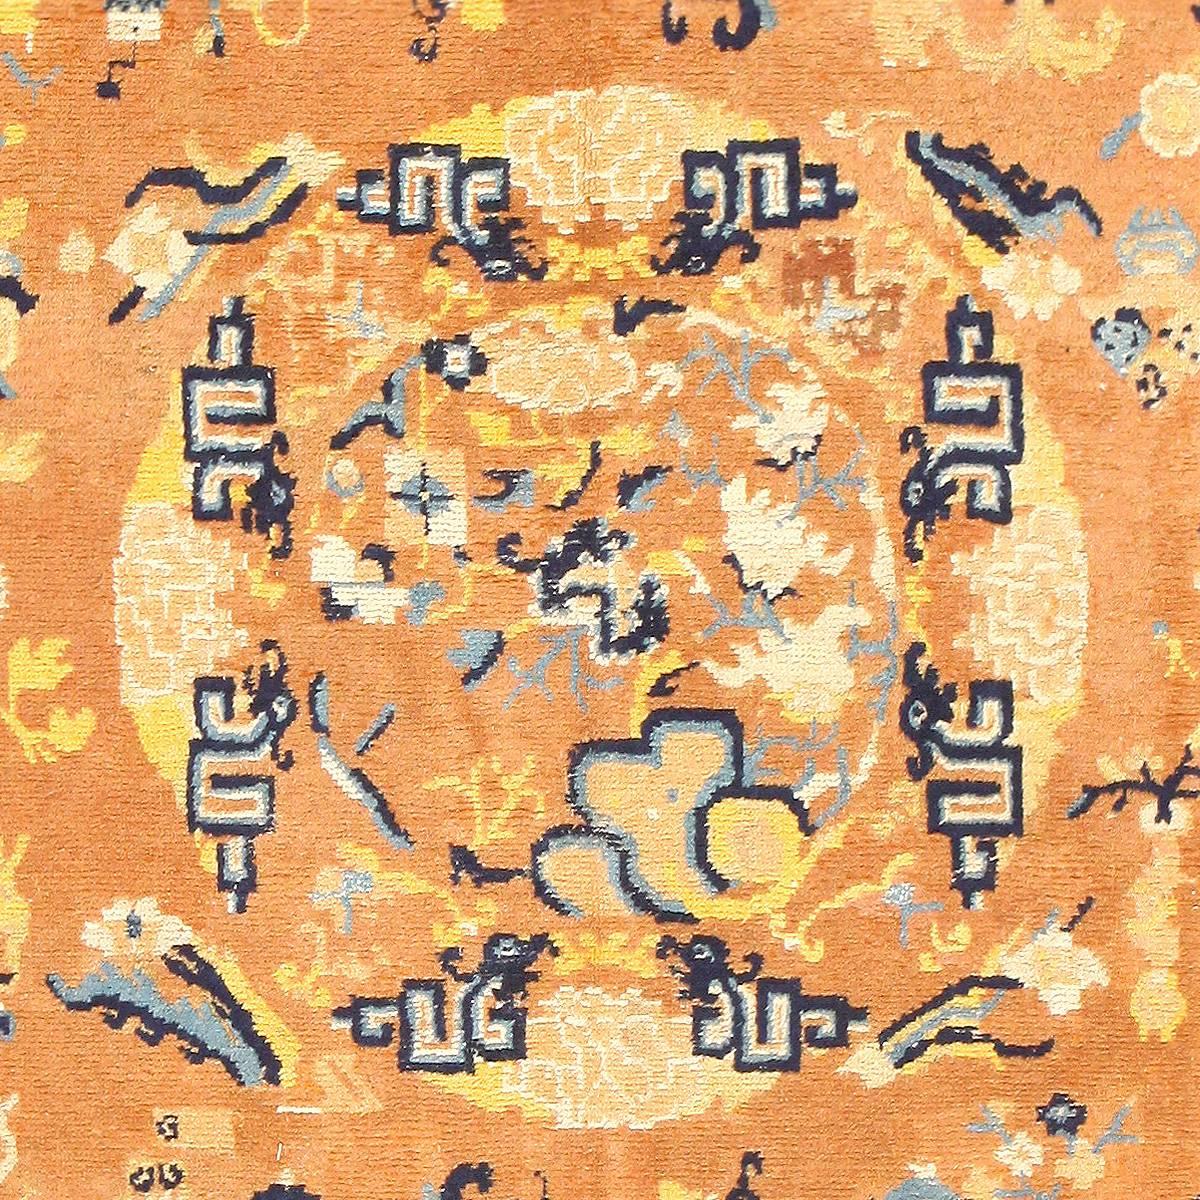 Chinesischer Ningxia-Teppich aus dem späten 17. Jahrhundert, Herkunftsland / Teppichart: China Teppiche, CIRCA Datum: Spätes 17. Jahrhundert - Größe: 6 ft 2 in x 12 ft (1,88 m x 3,66 m)

Im Gegensatz zu vielen traditionellen chinesischen Teppichen